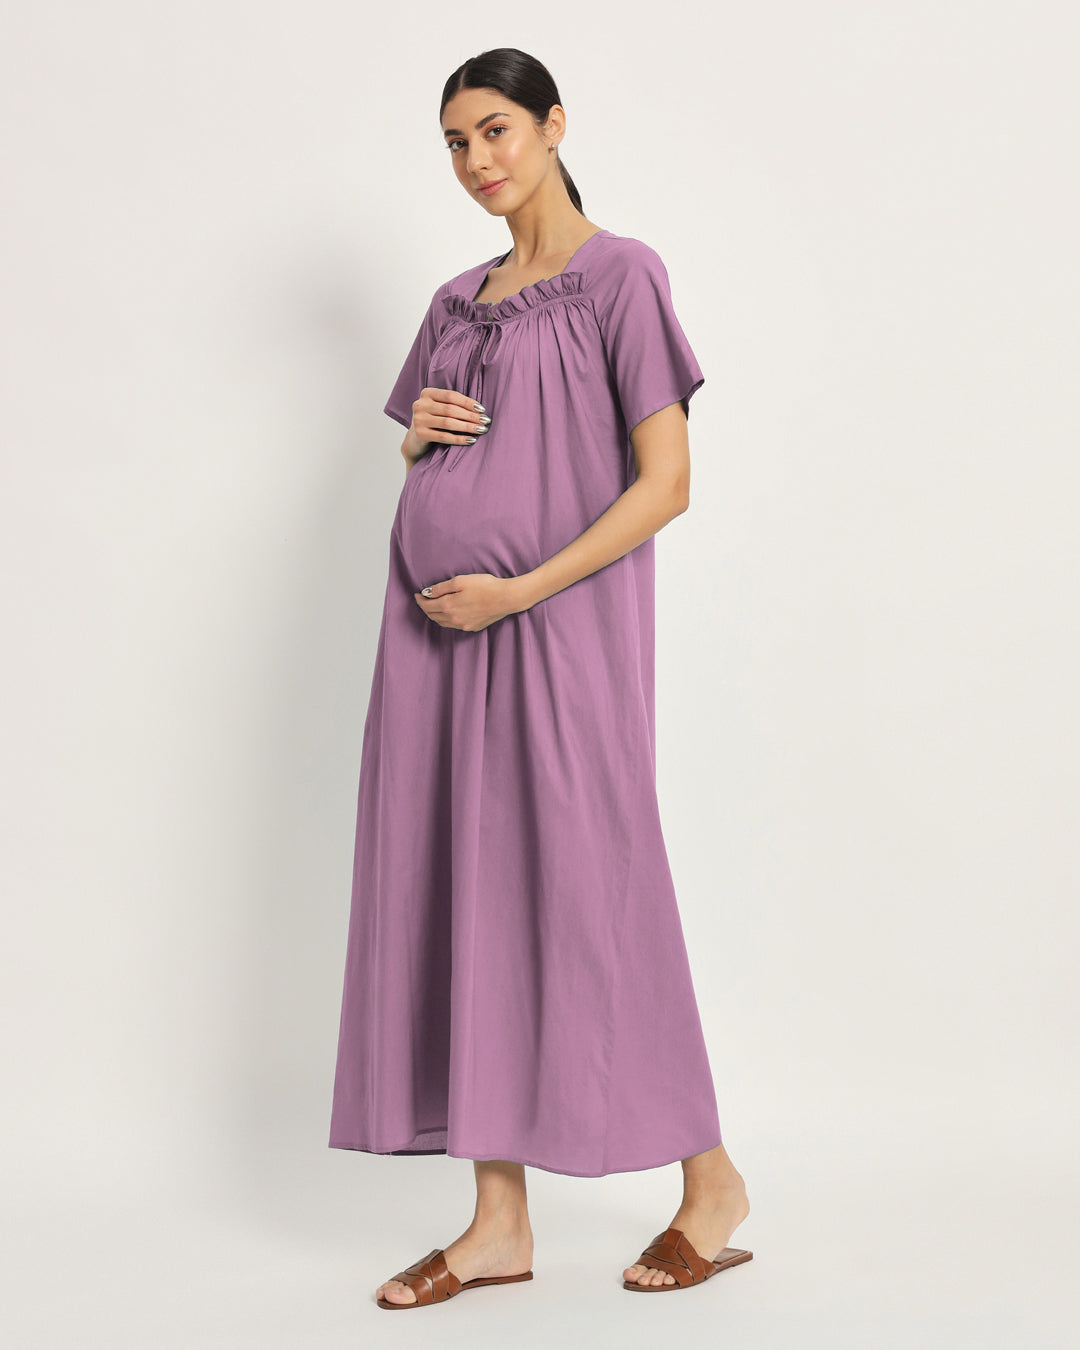 Combo: Iris Pink & Sage Green Nurture N' Shine Maternity & Nursing Dress